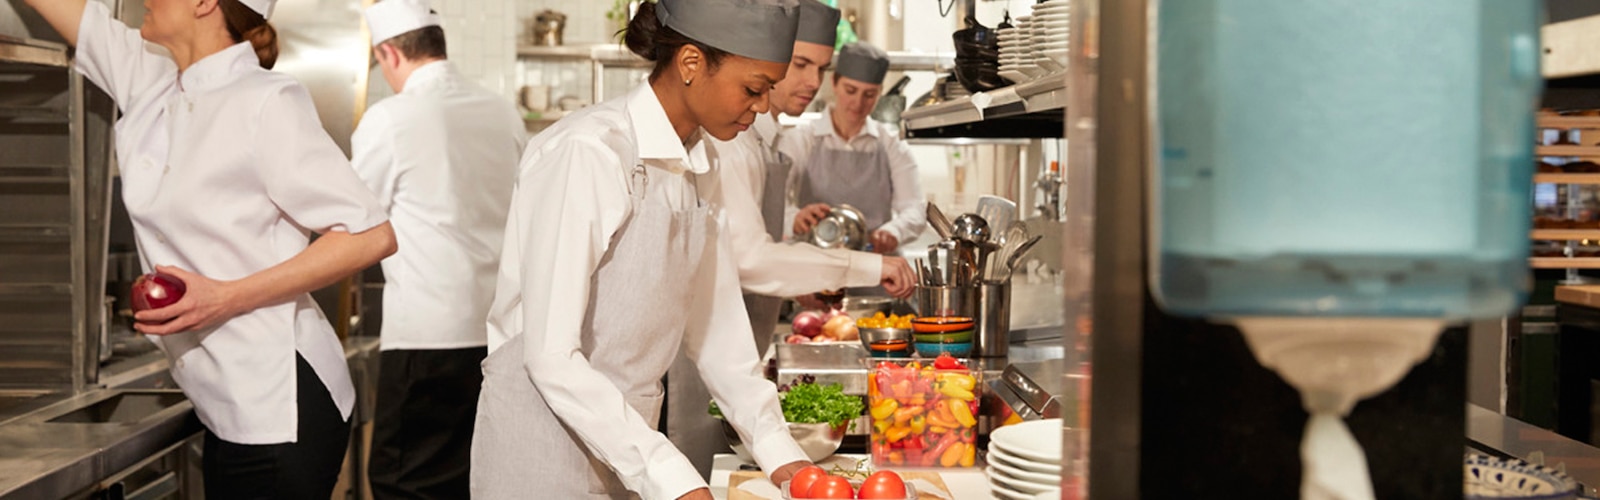 Kvinnor och män som förbereder maträtter i ett restaurangkök